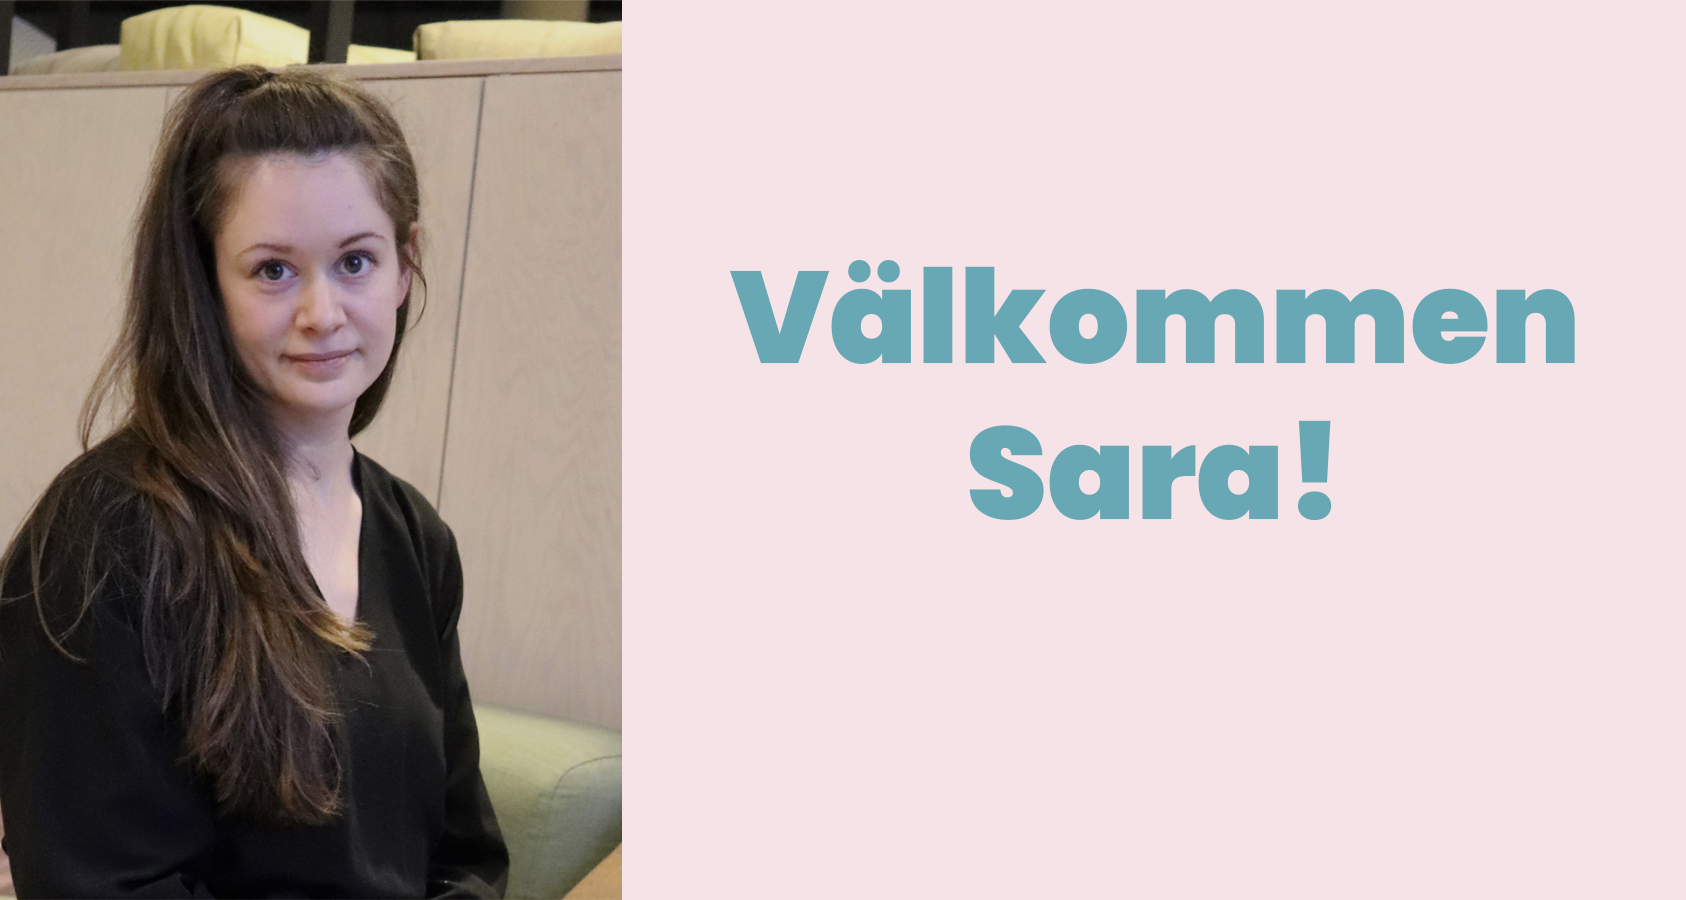 Välkommen Sara, kommunikatörspraktikant på Livsmedelsakademin!